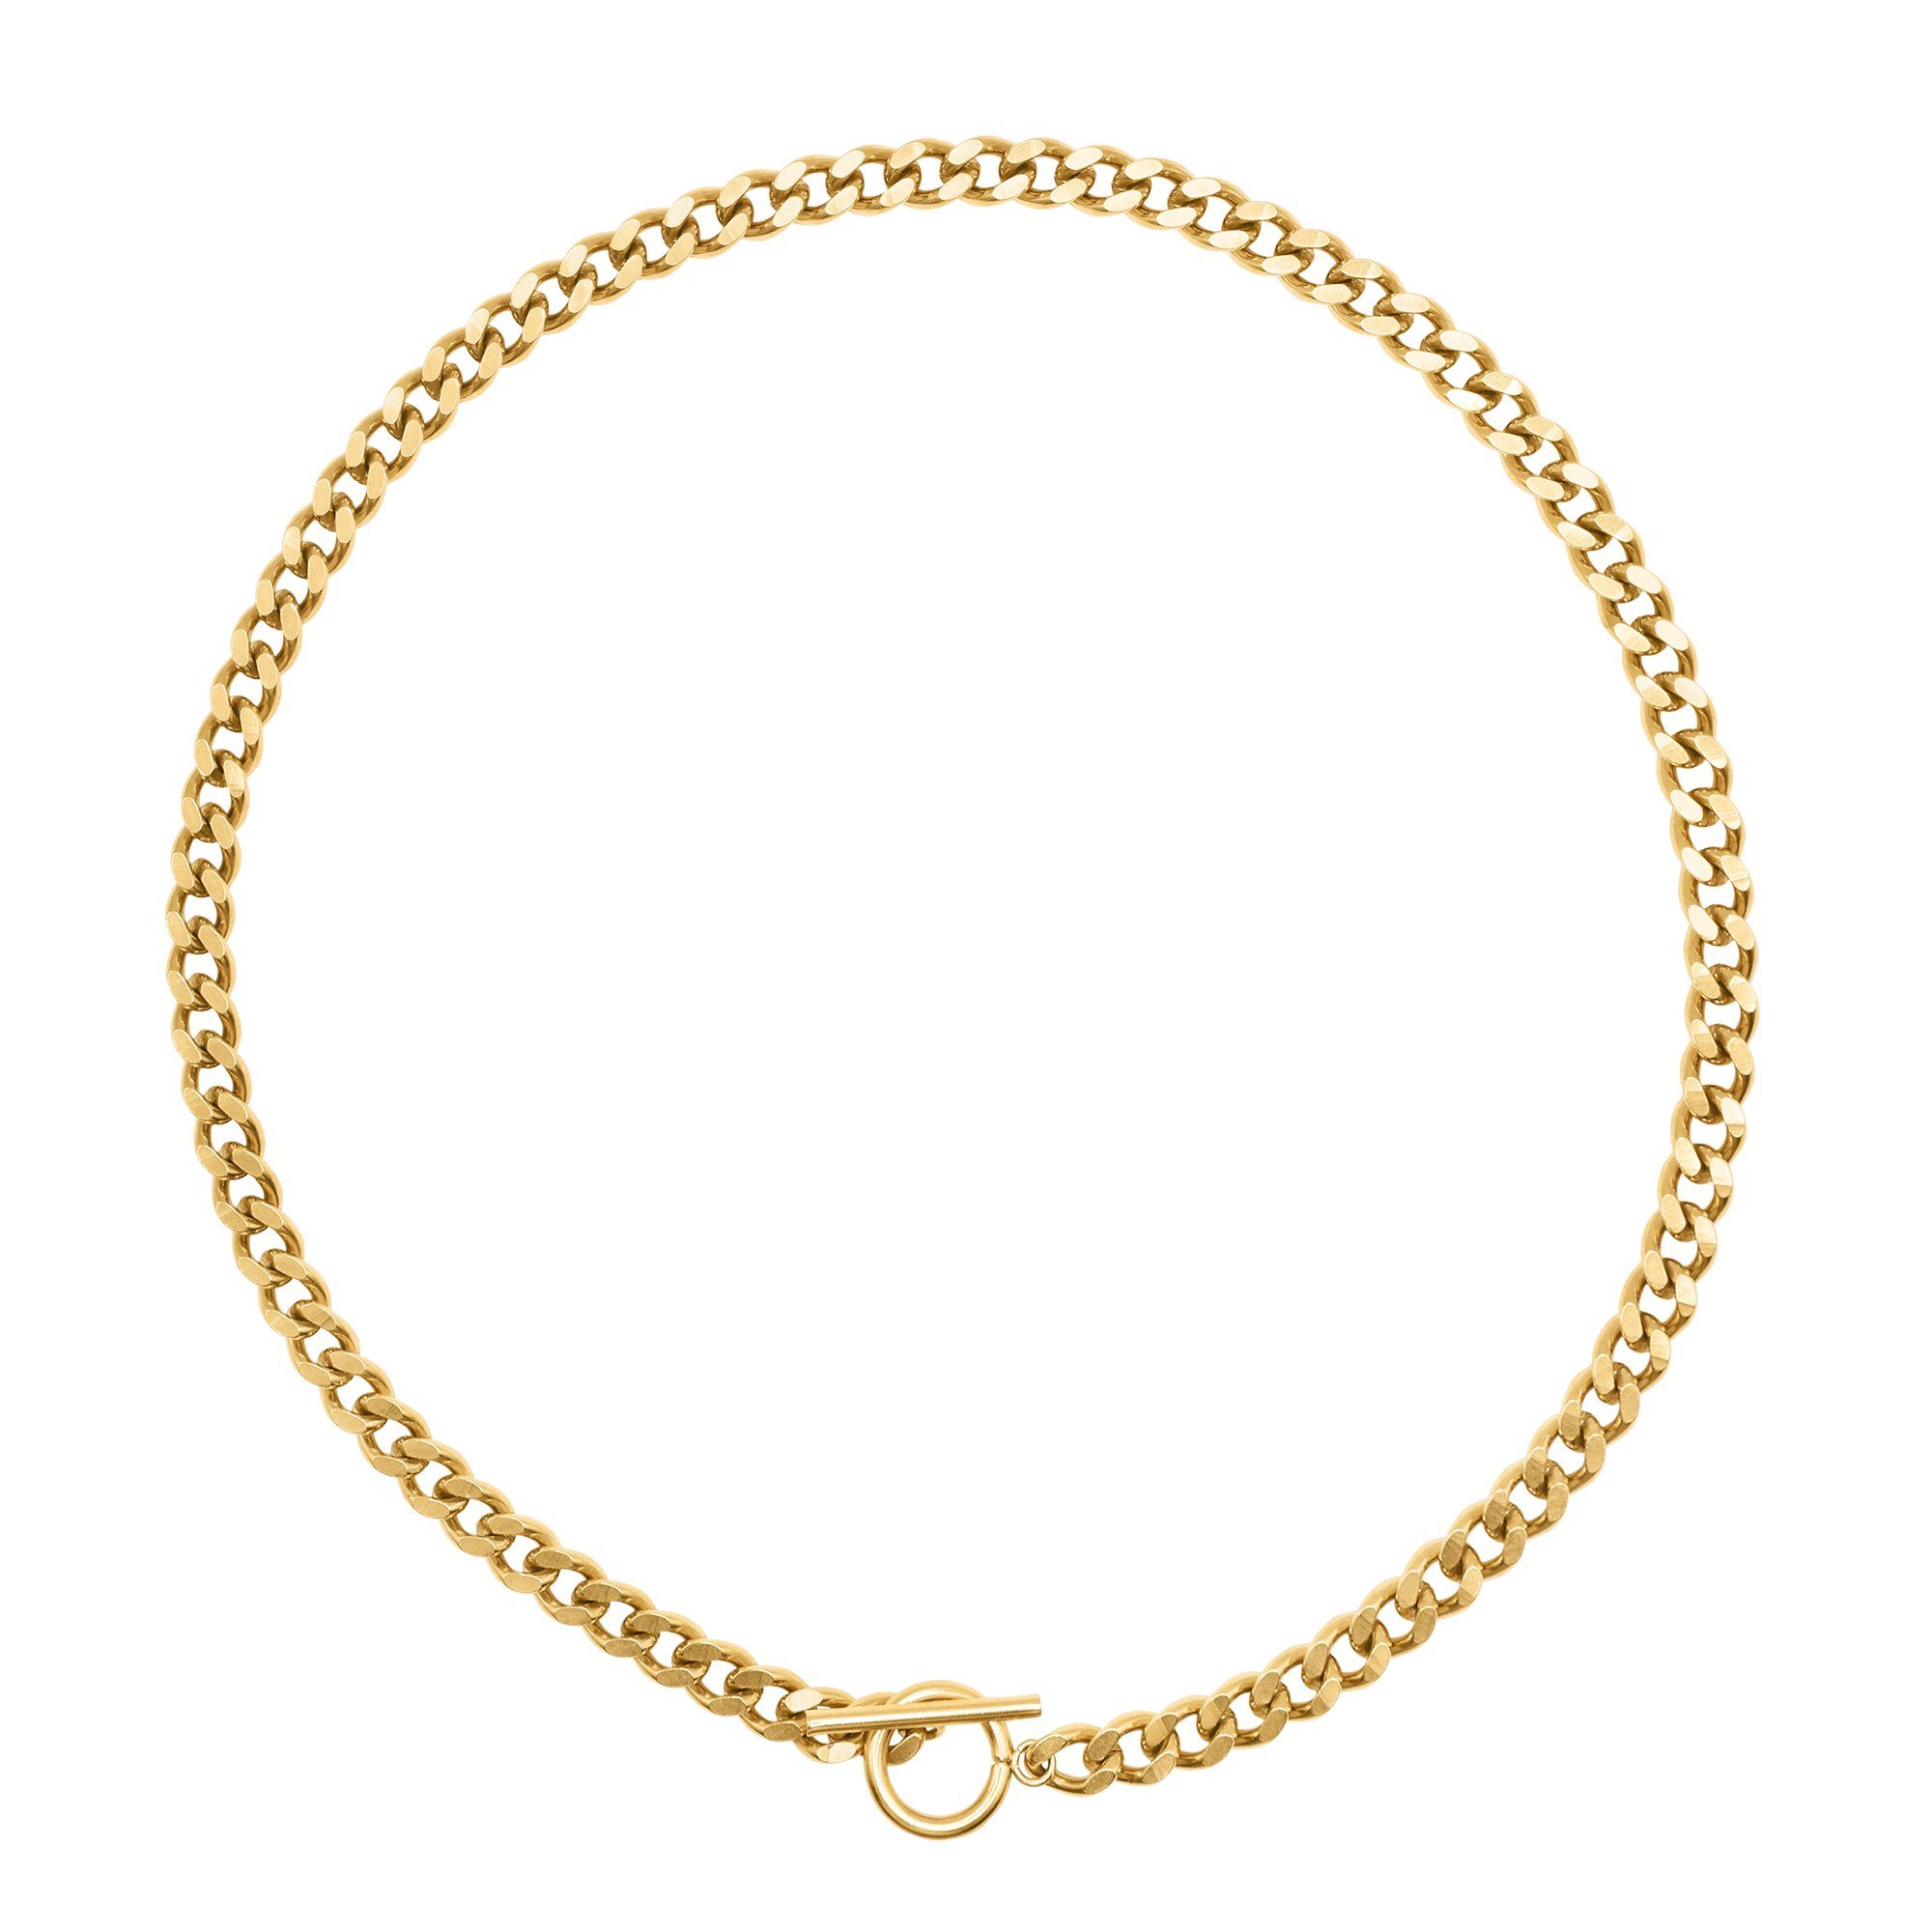 Heideman Collier Belly goldfarben (inkl. Geschenkverpackung), Halskette mit Knebelverschluss Damen